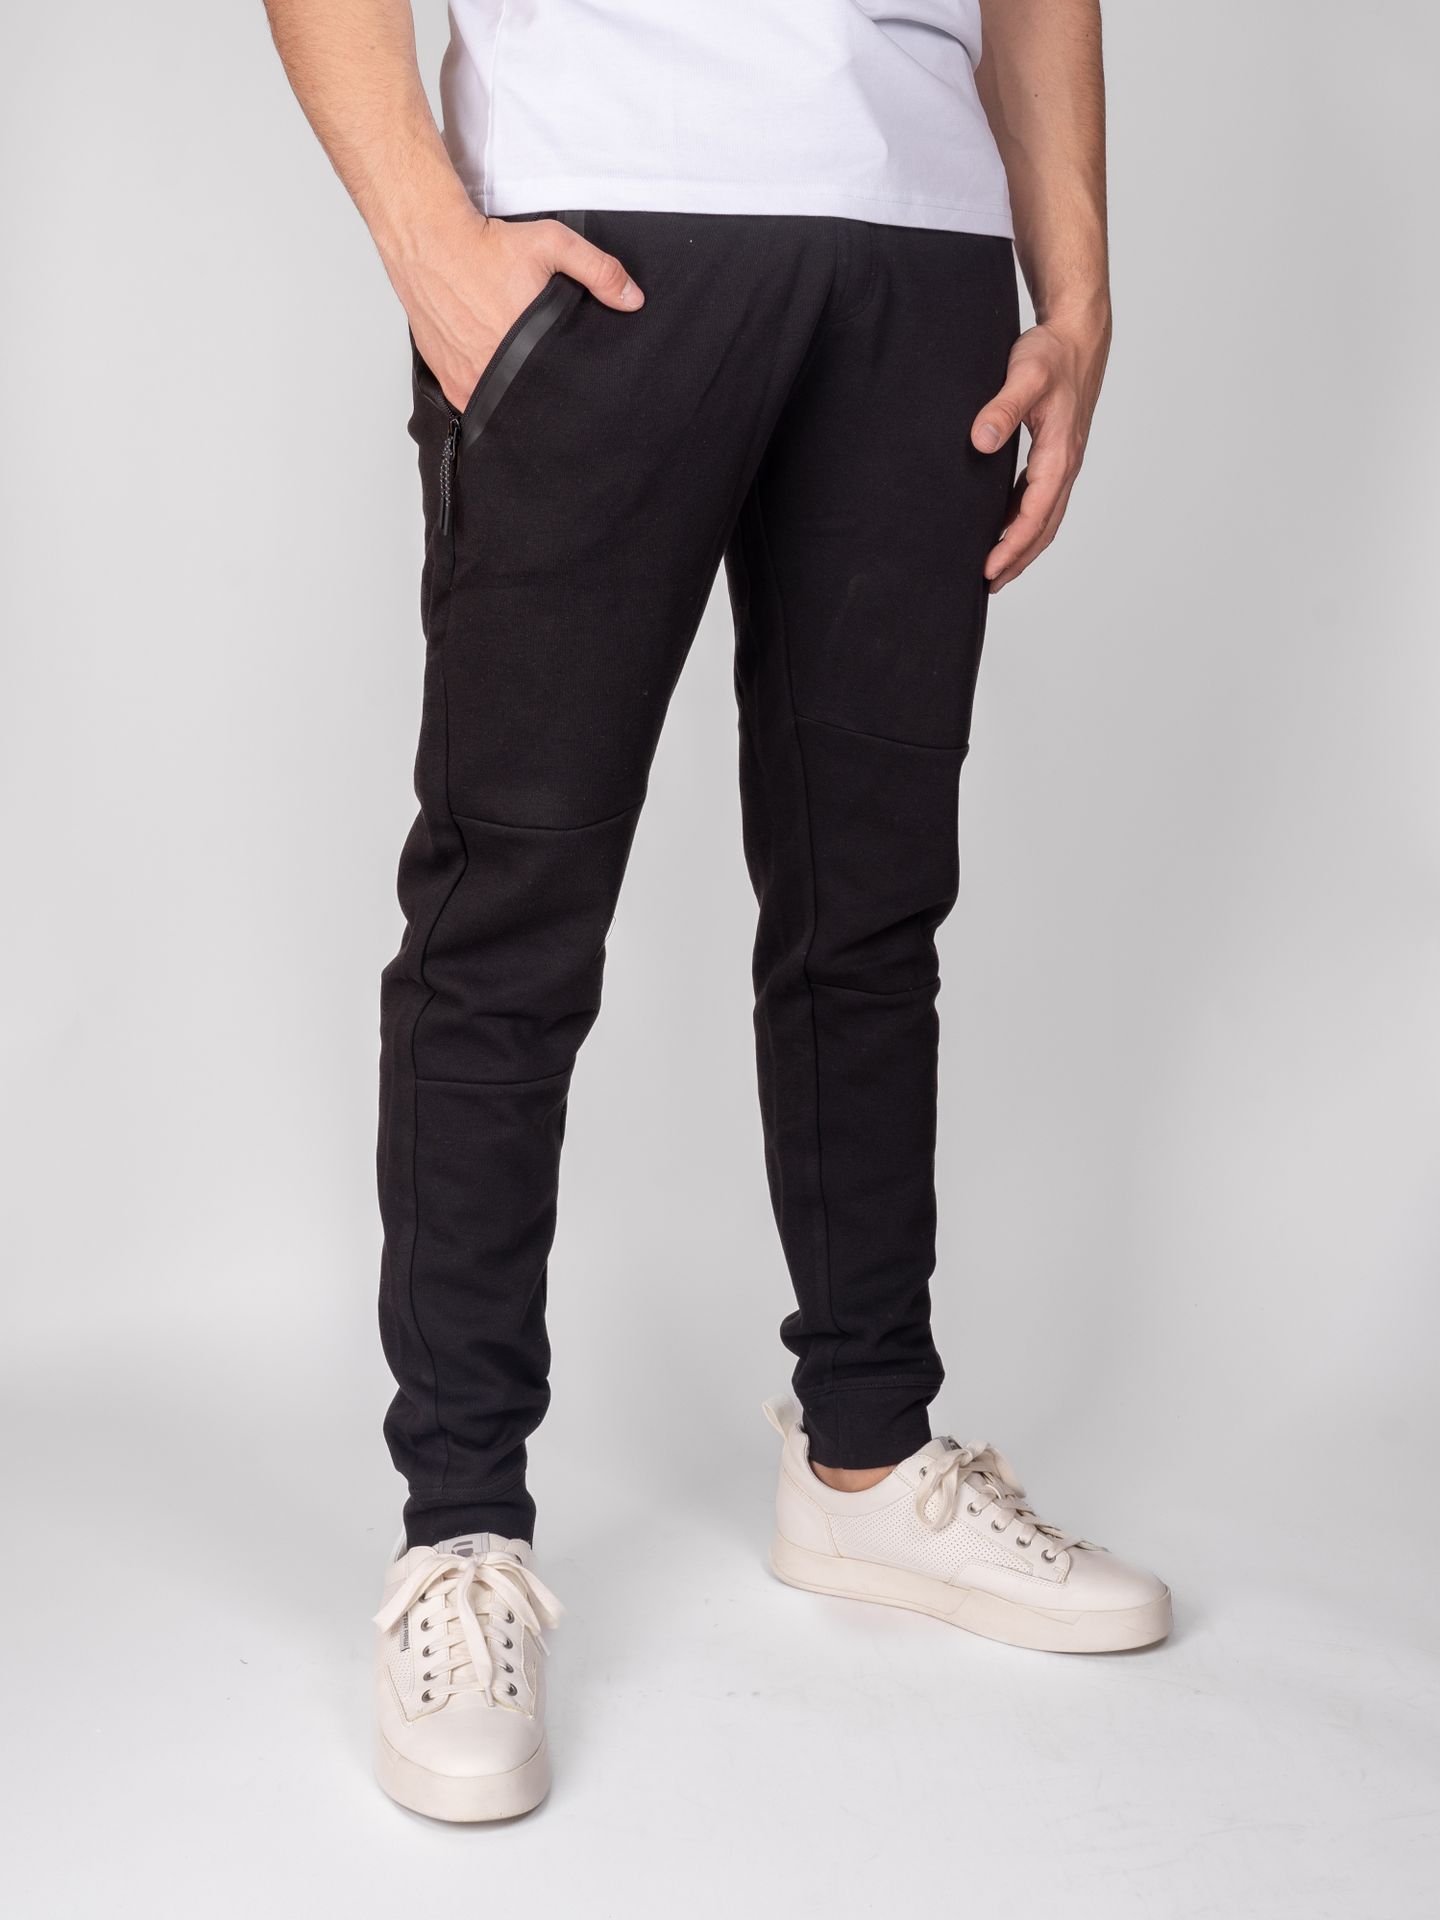 Cars jeans Pants Lax 01 black 00102761-EKA03000200000001